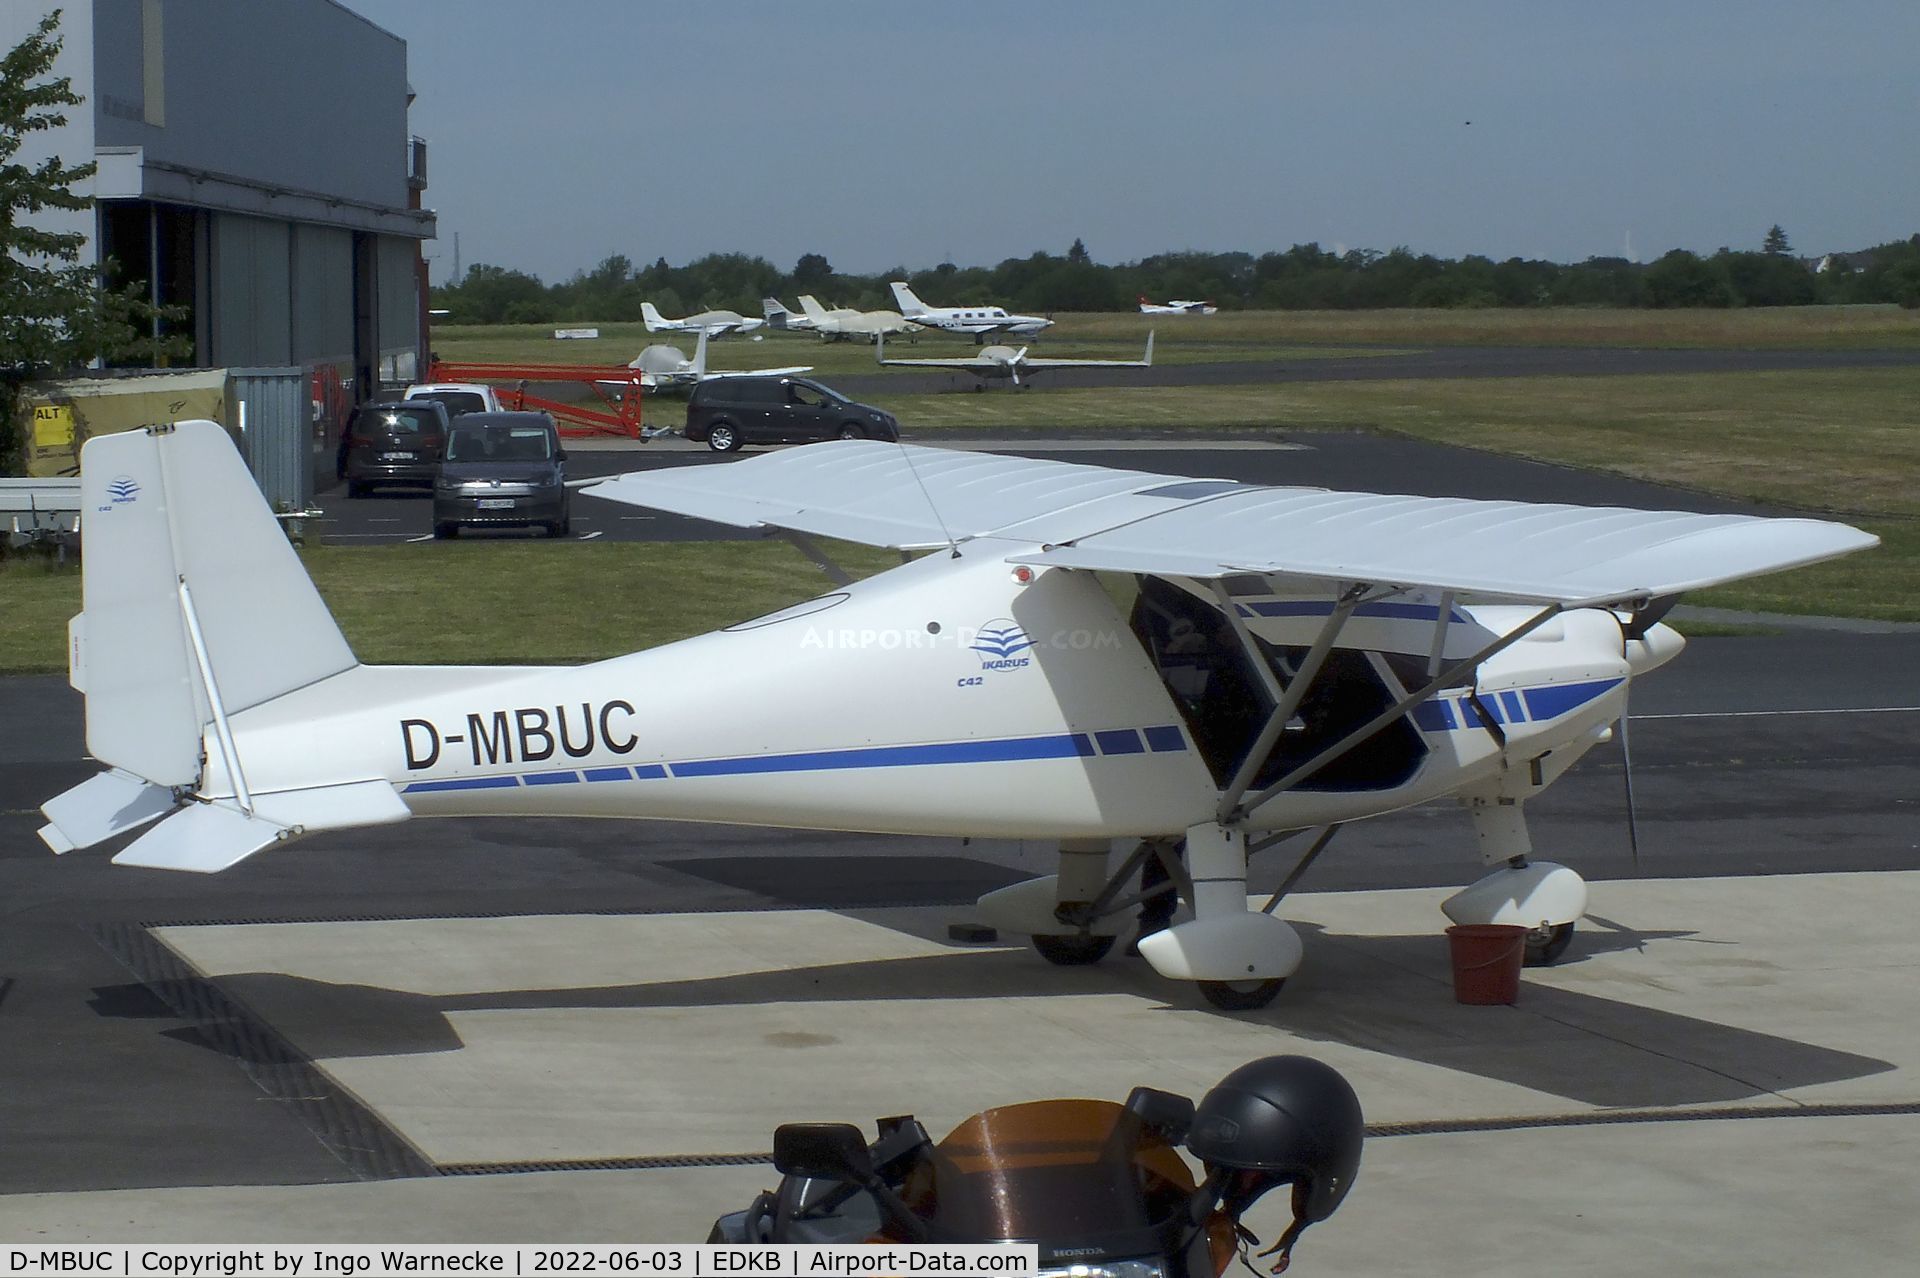 D-MBUC, 2015 Comco Ikarus C-42 C/N 1505-7393, Comco Ikarus C42 at Bonn-Hangelar airfield '2205-06